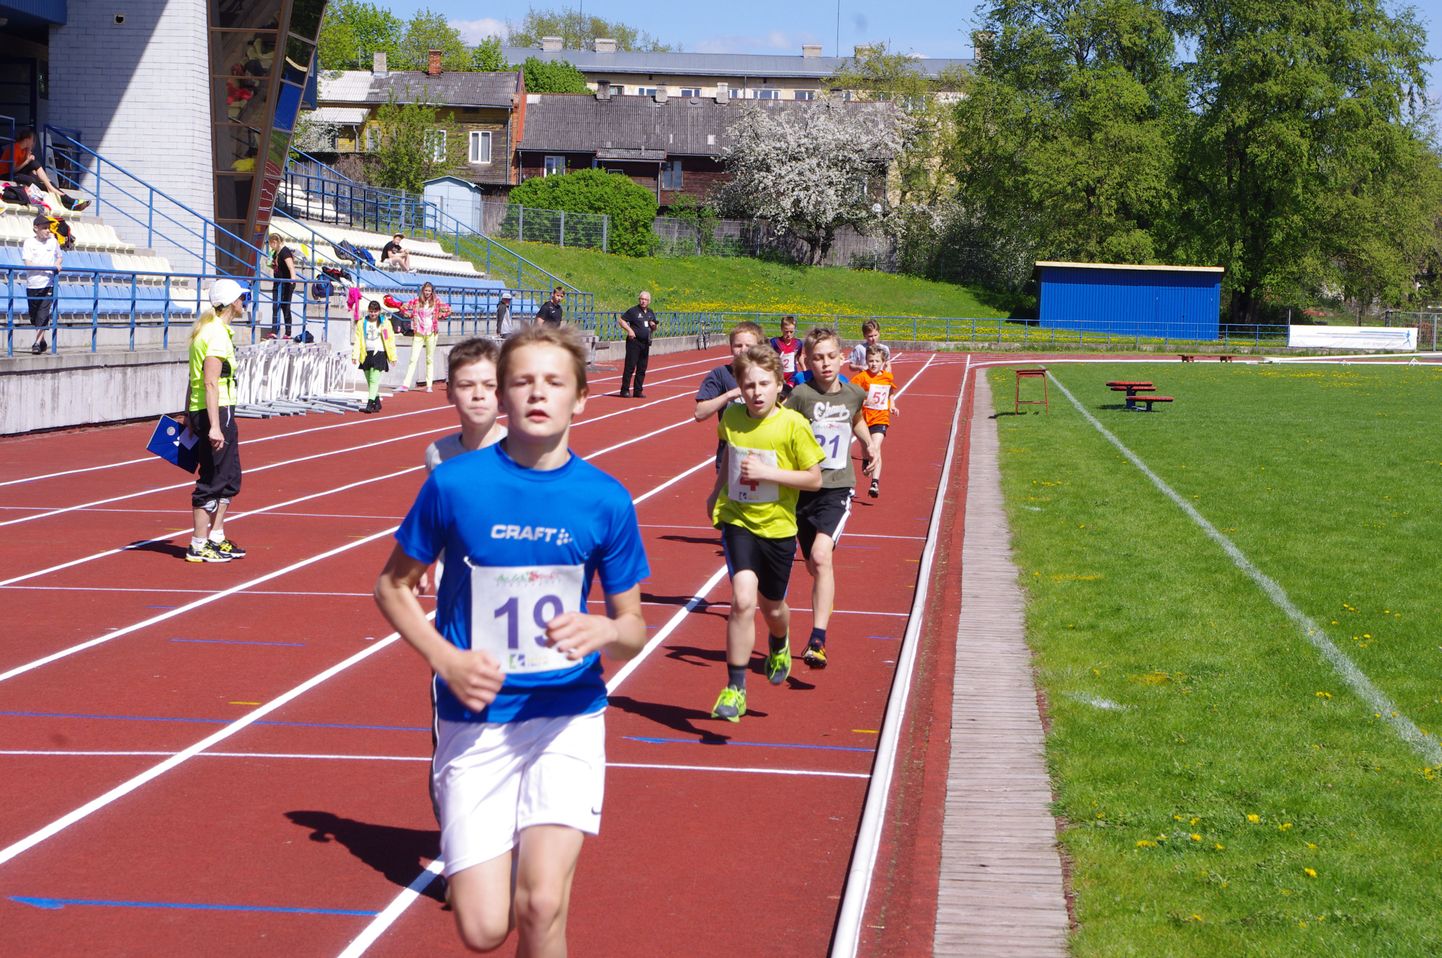 TV10 olümpiastarti finaalvõistlus kujunes Valgamaa noortele edukaks. Koolide arvestuses säilitas Valga põhikool kolmanda koha. Foto on illustratiivne.